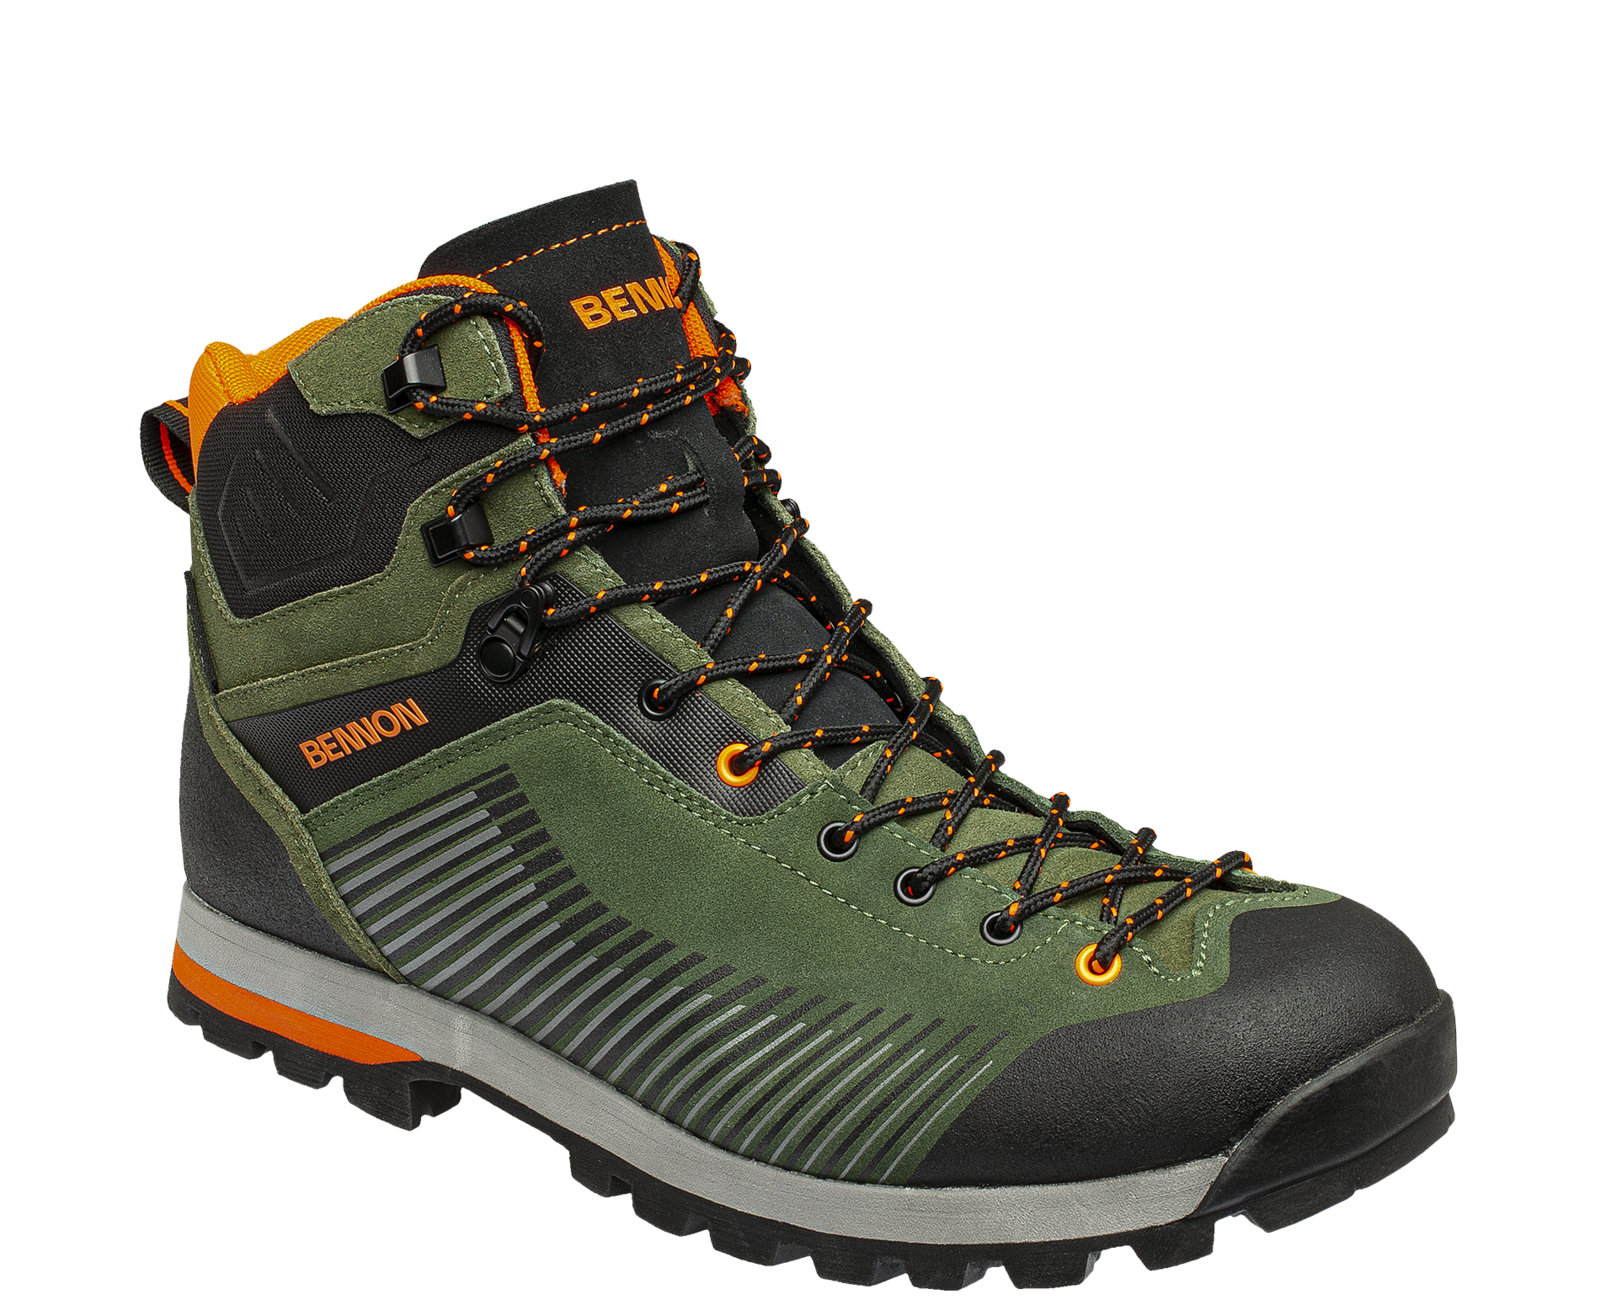 Kožená členková obuv s membránou Bennon Peak Green High - veľkosť: 41, farba: khaki/oranžová